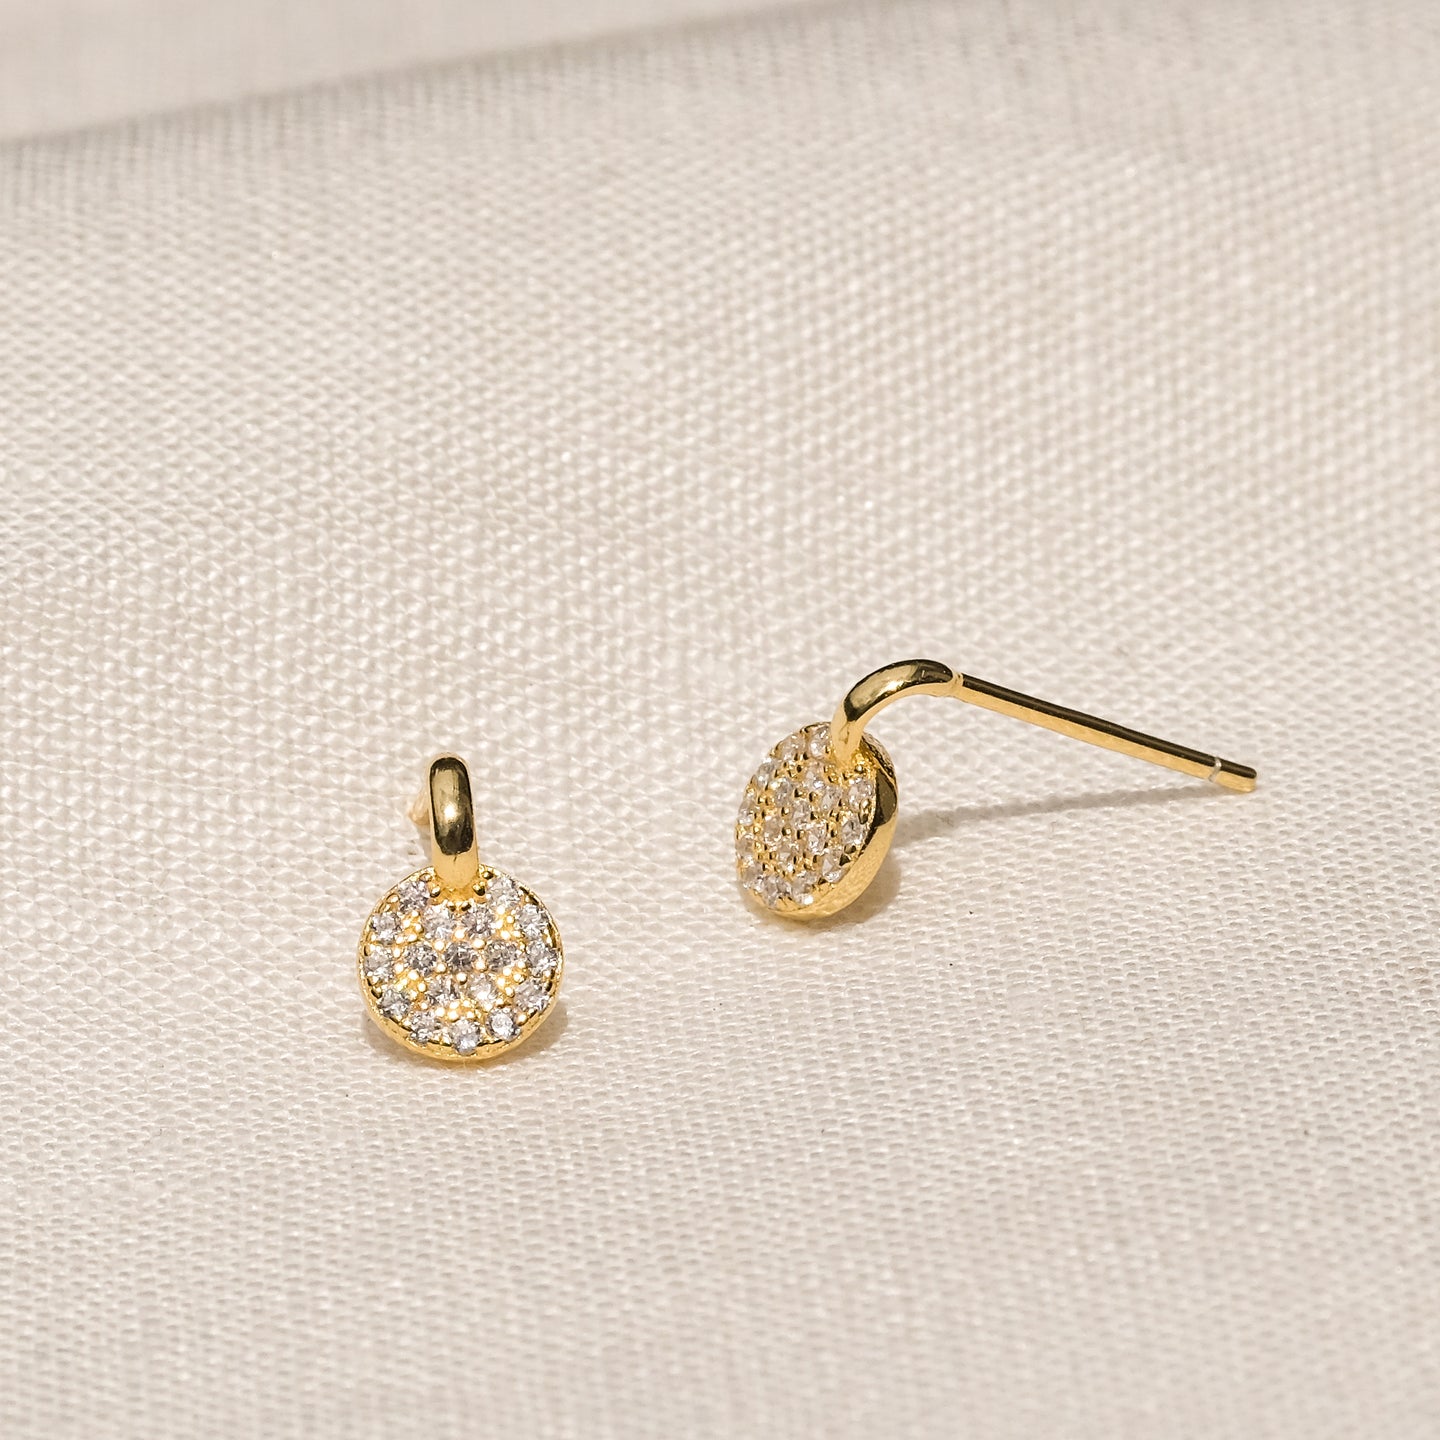 products/shin-cz-stud-earrings-18k-gold-vermeil-1.jpg